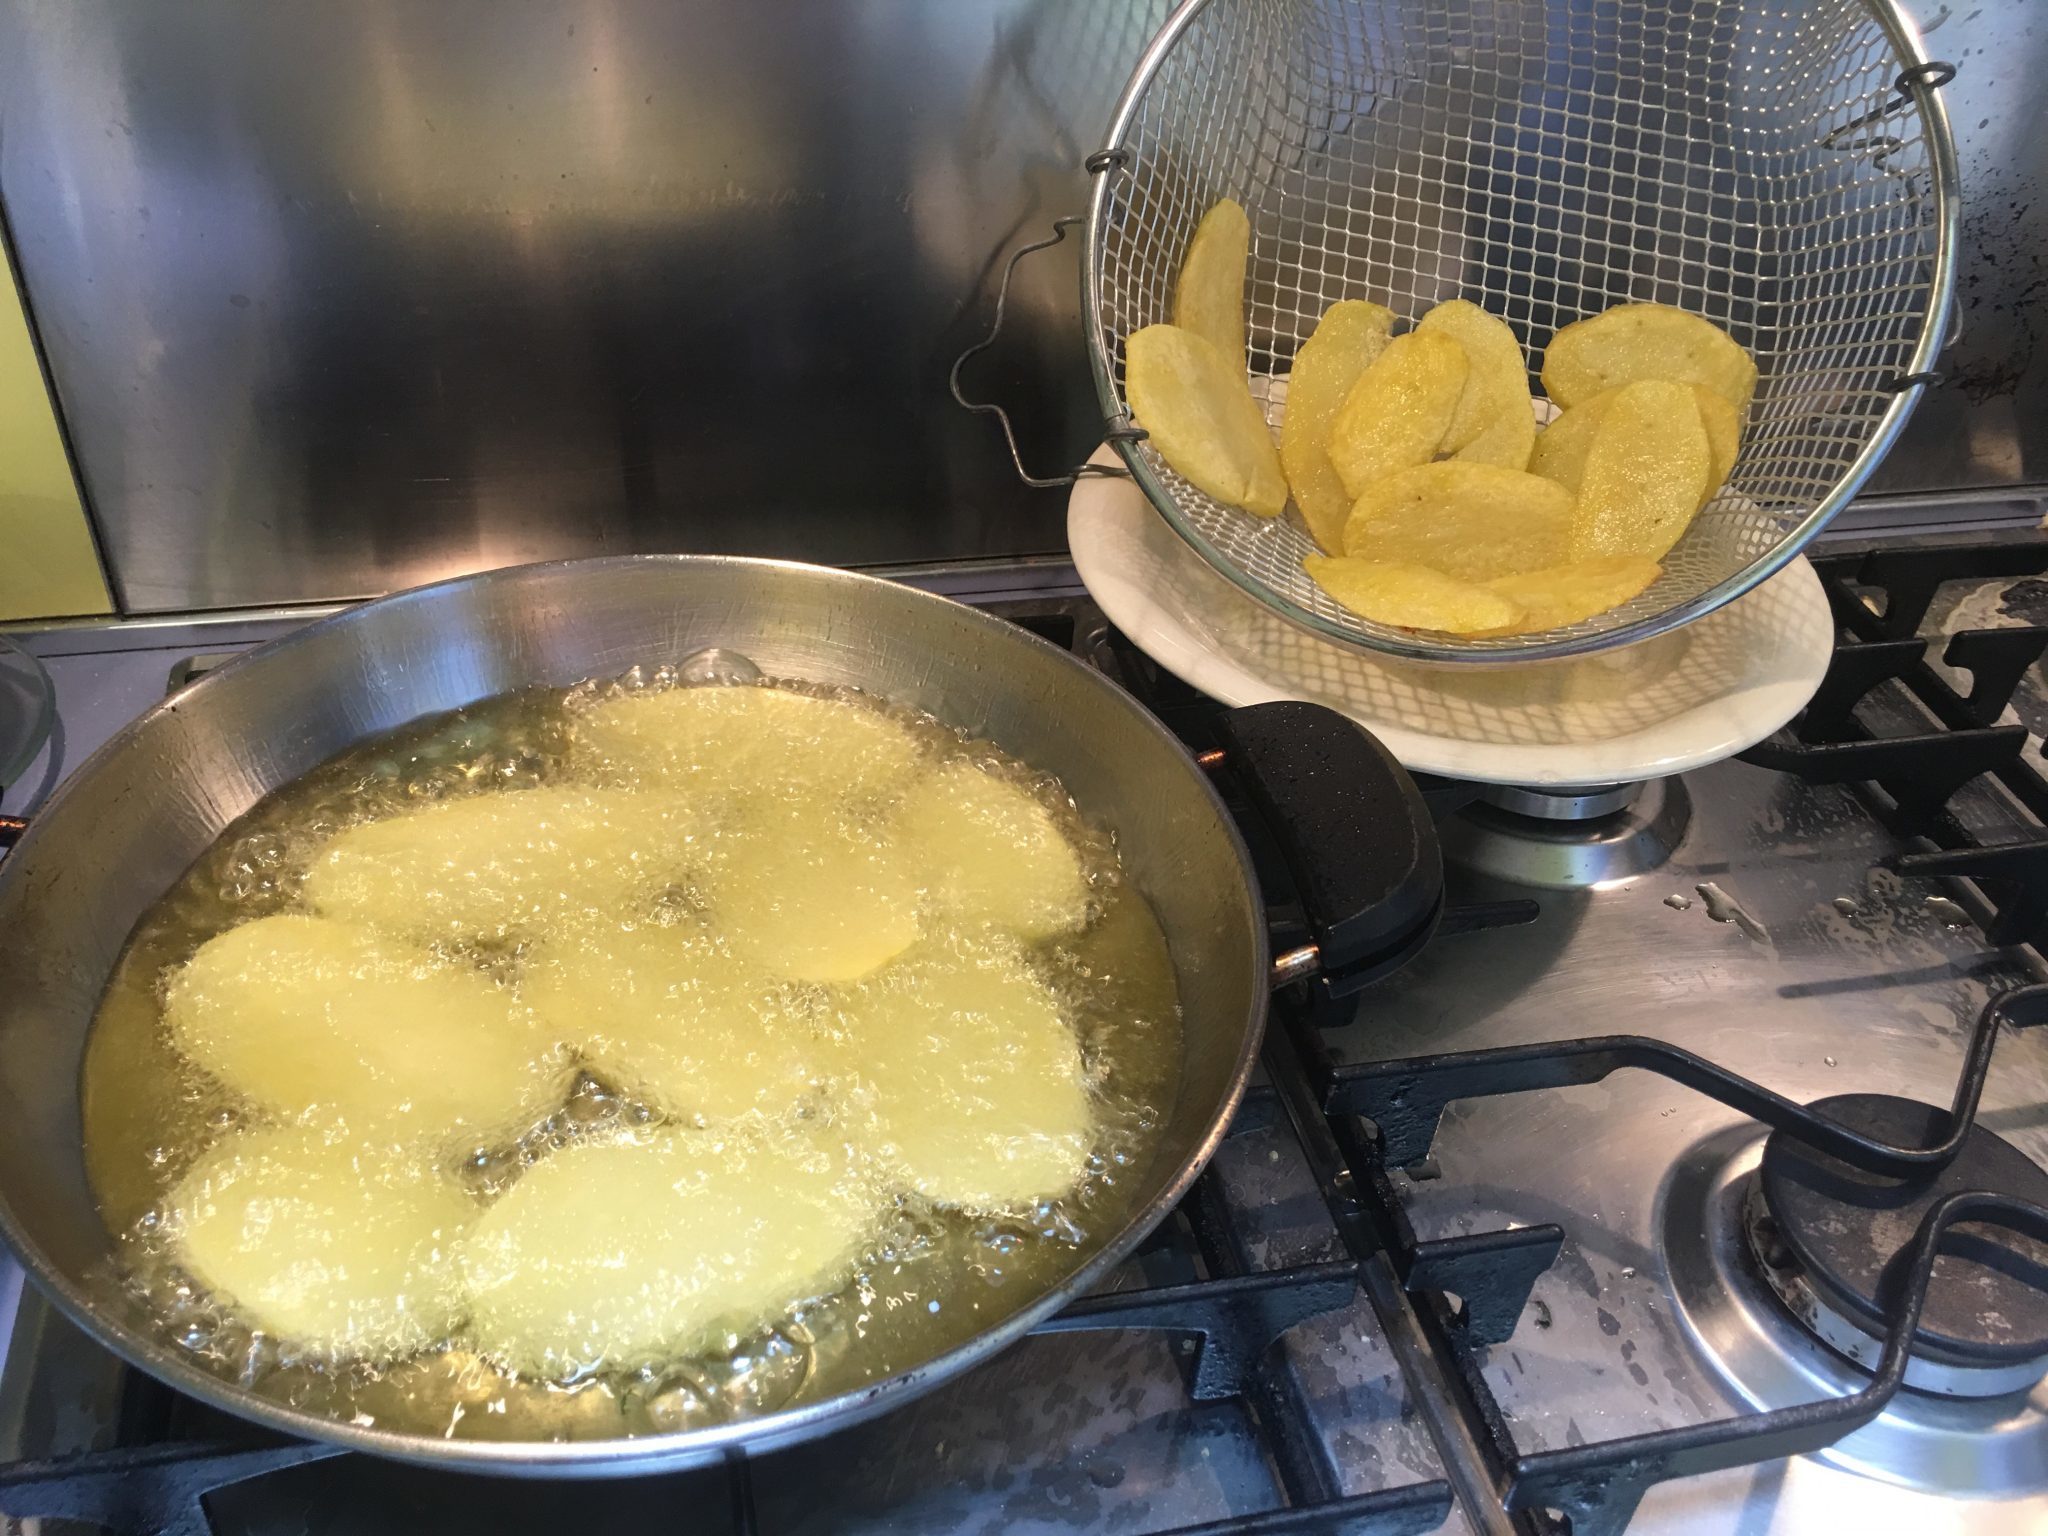 Patate alla parmigiana - patate fritte a scolare in cestello a rete